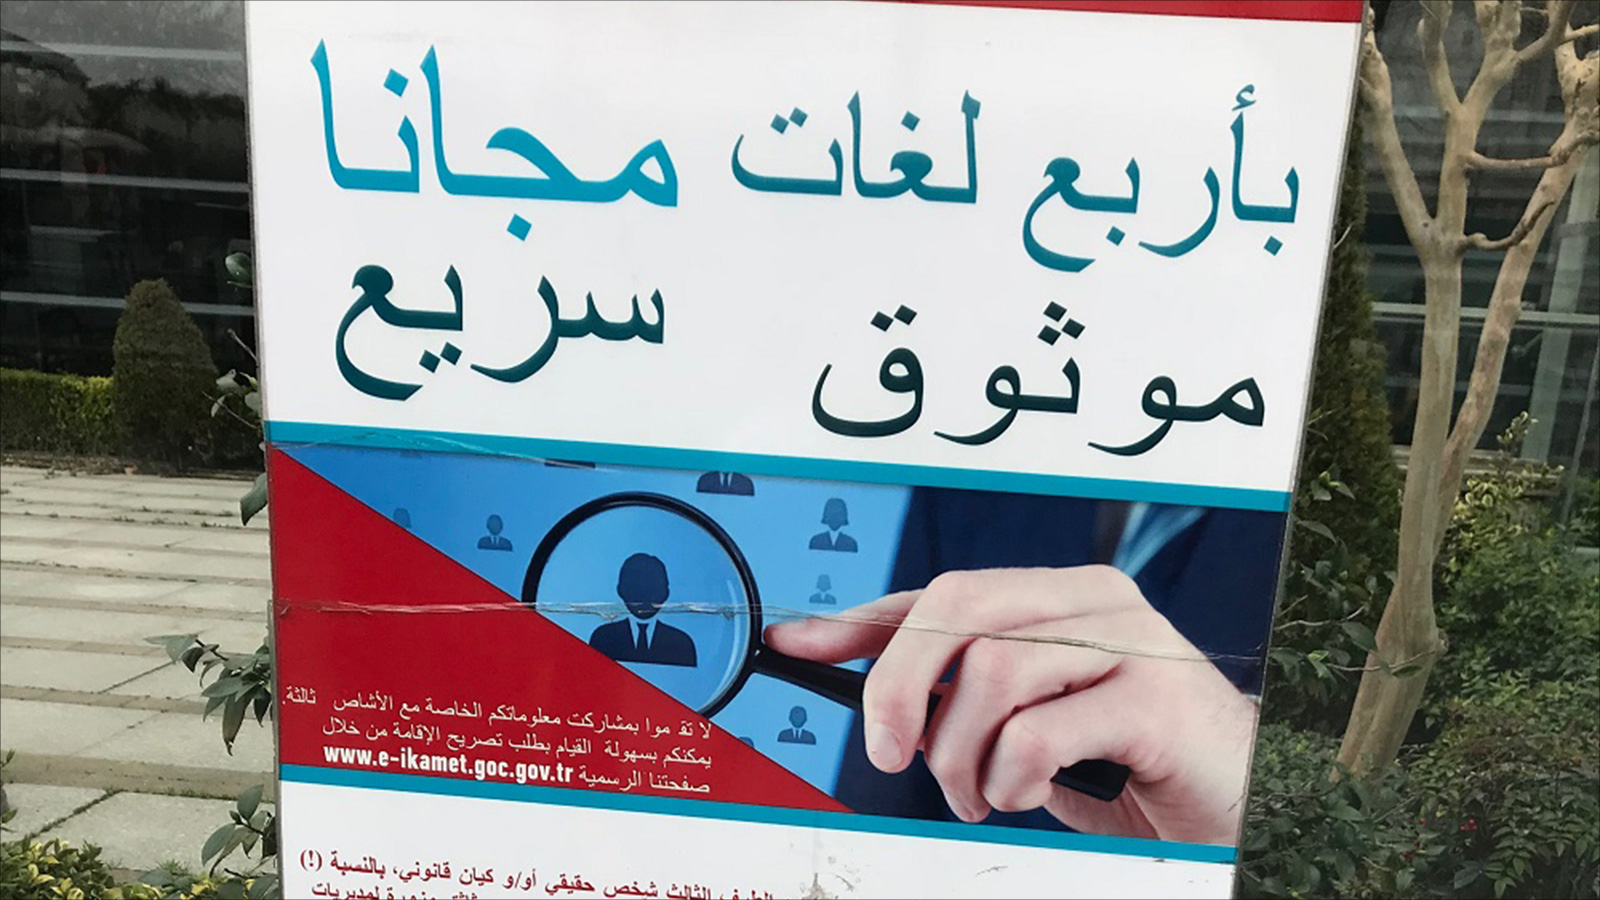 خدمات إرشادية تقدمها الحكومة التركية باللغة العربية للمتقدمين للحصول على الإقامة (الجزيرة)